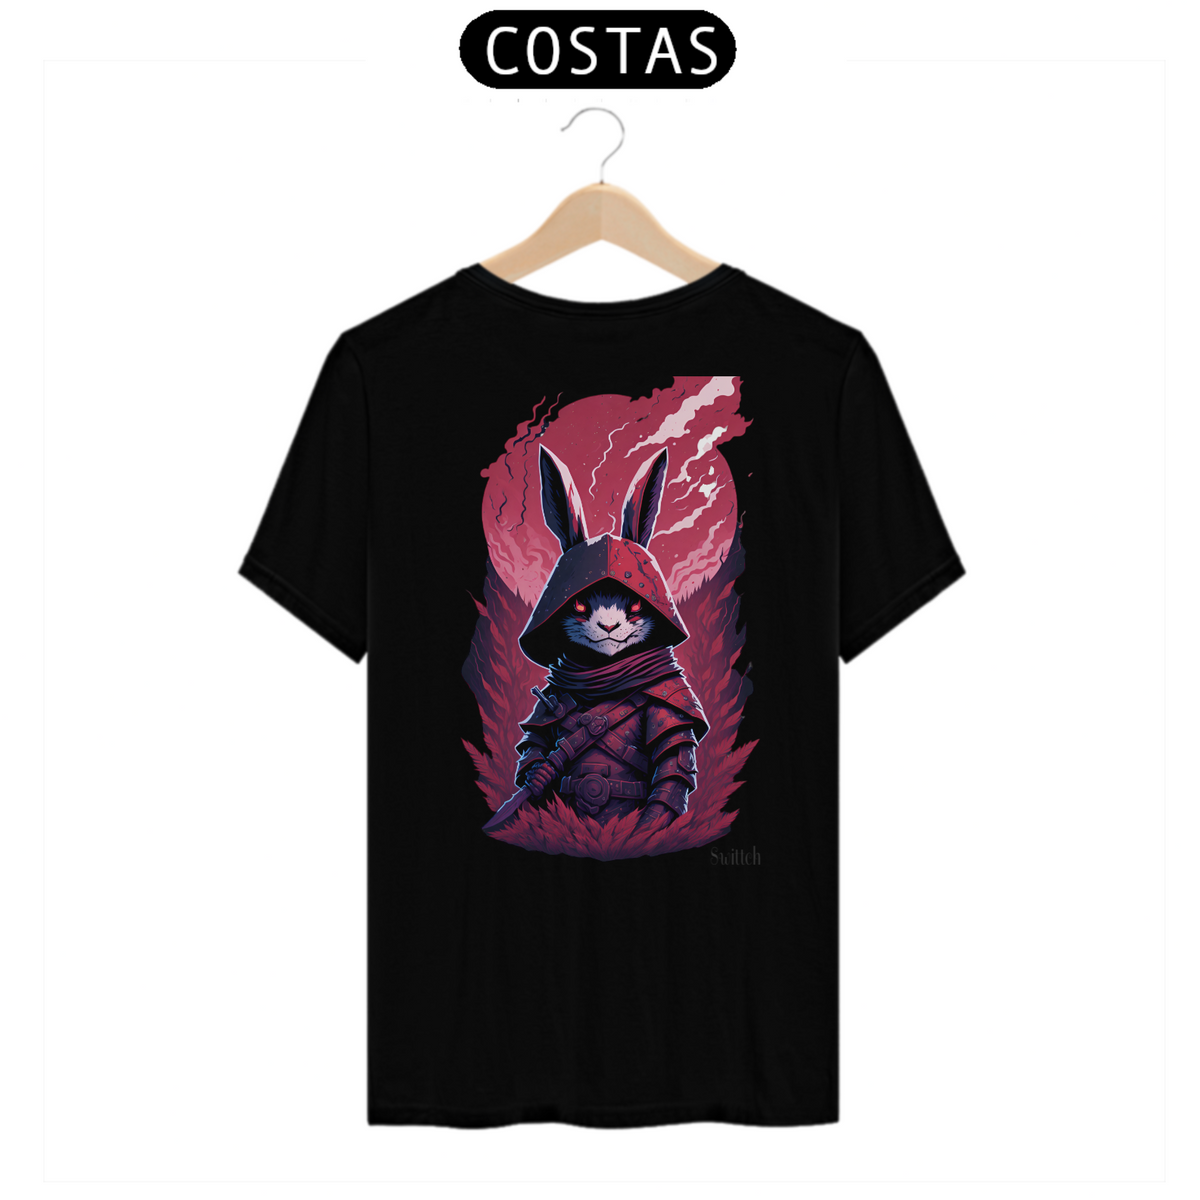 Nome do produto: T-shirt classic - collection rabbit part 2